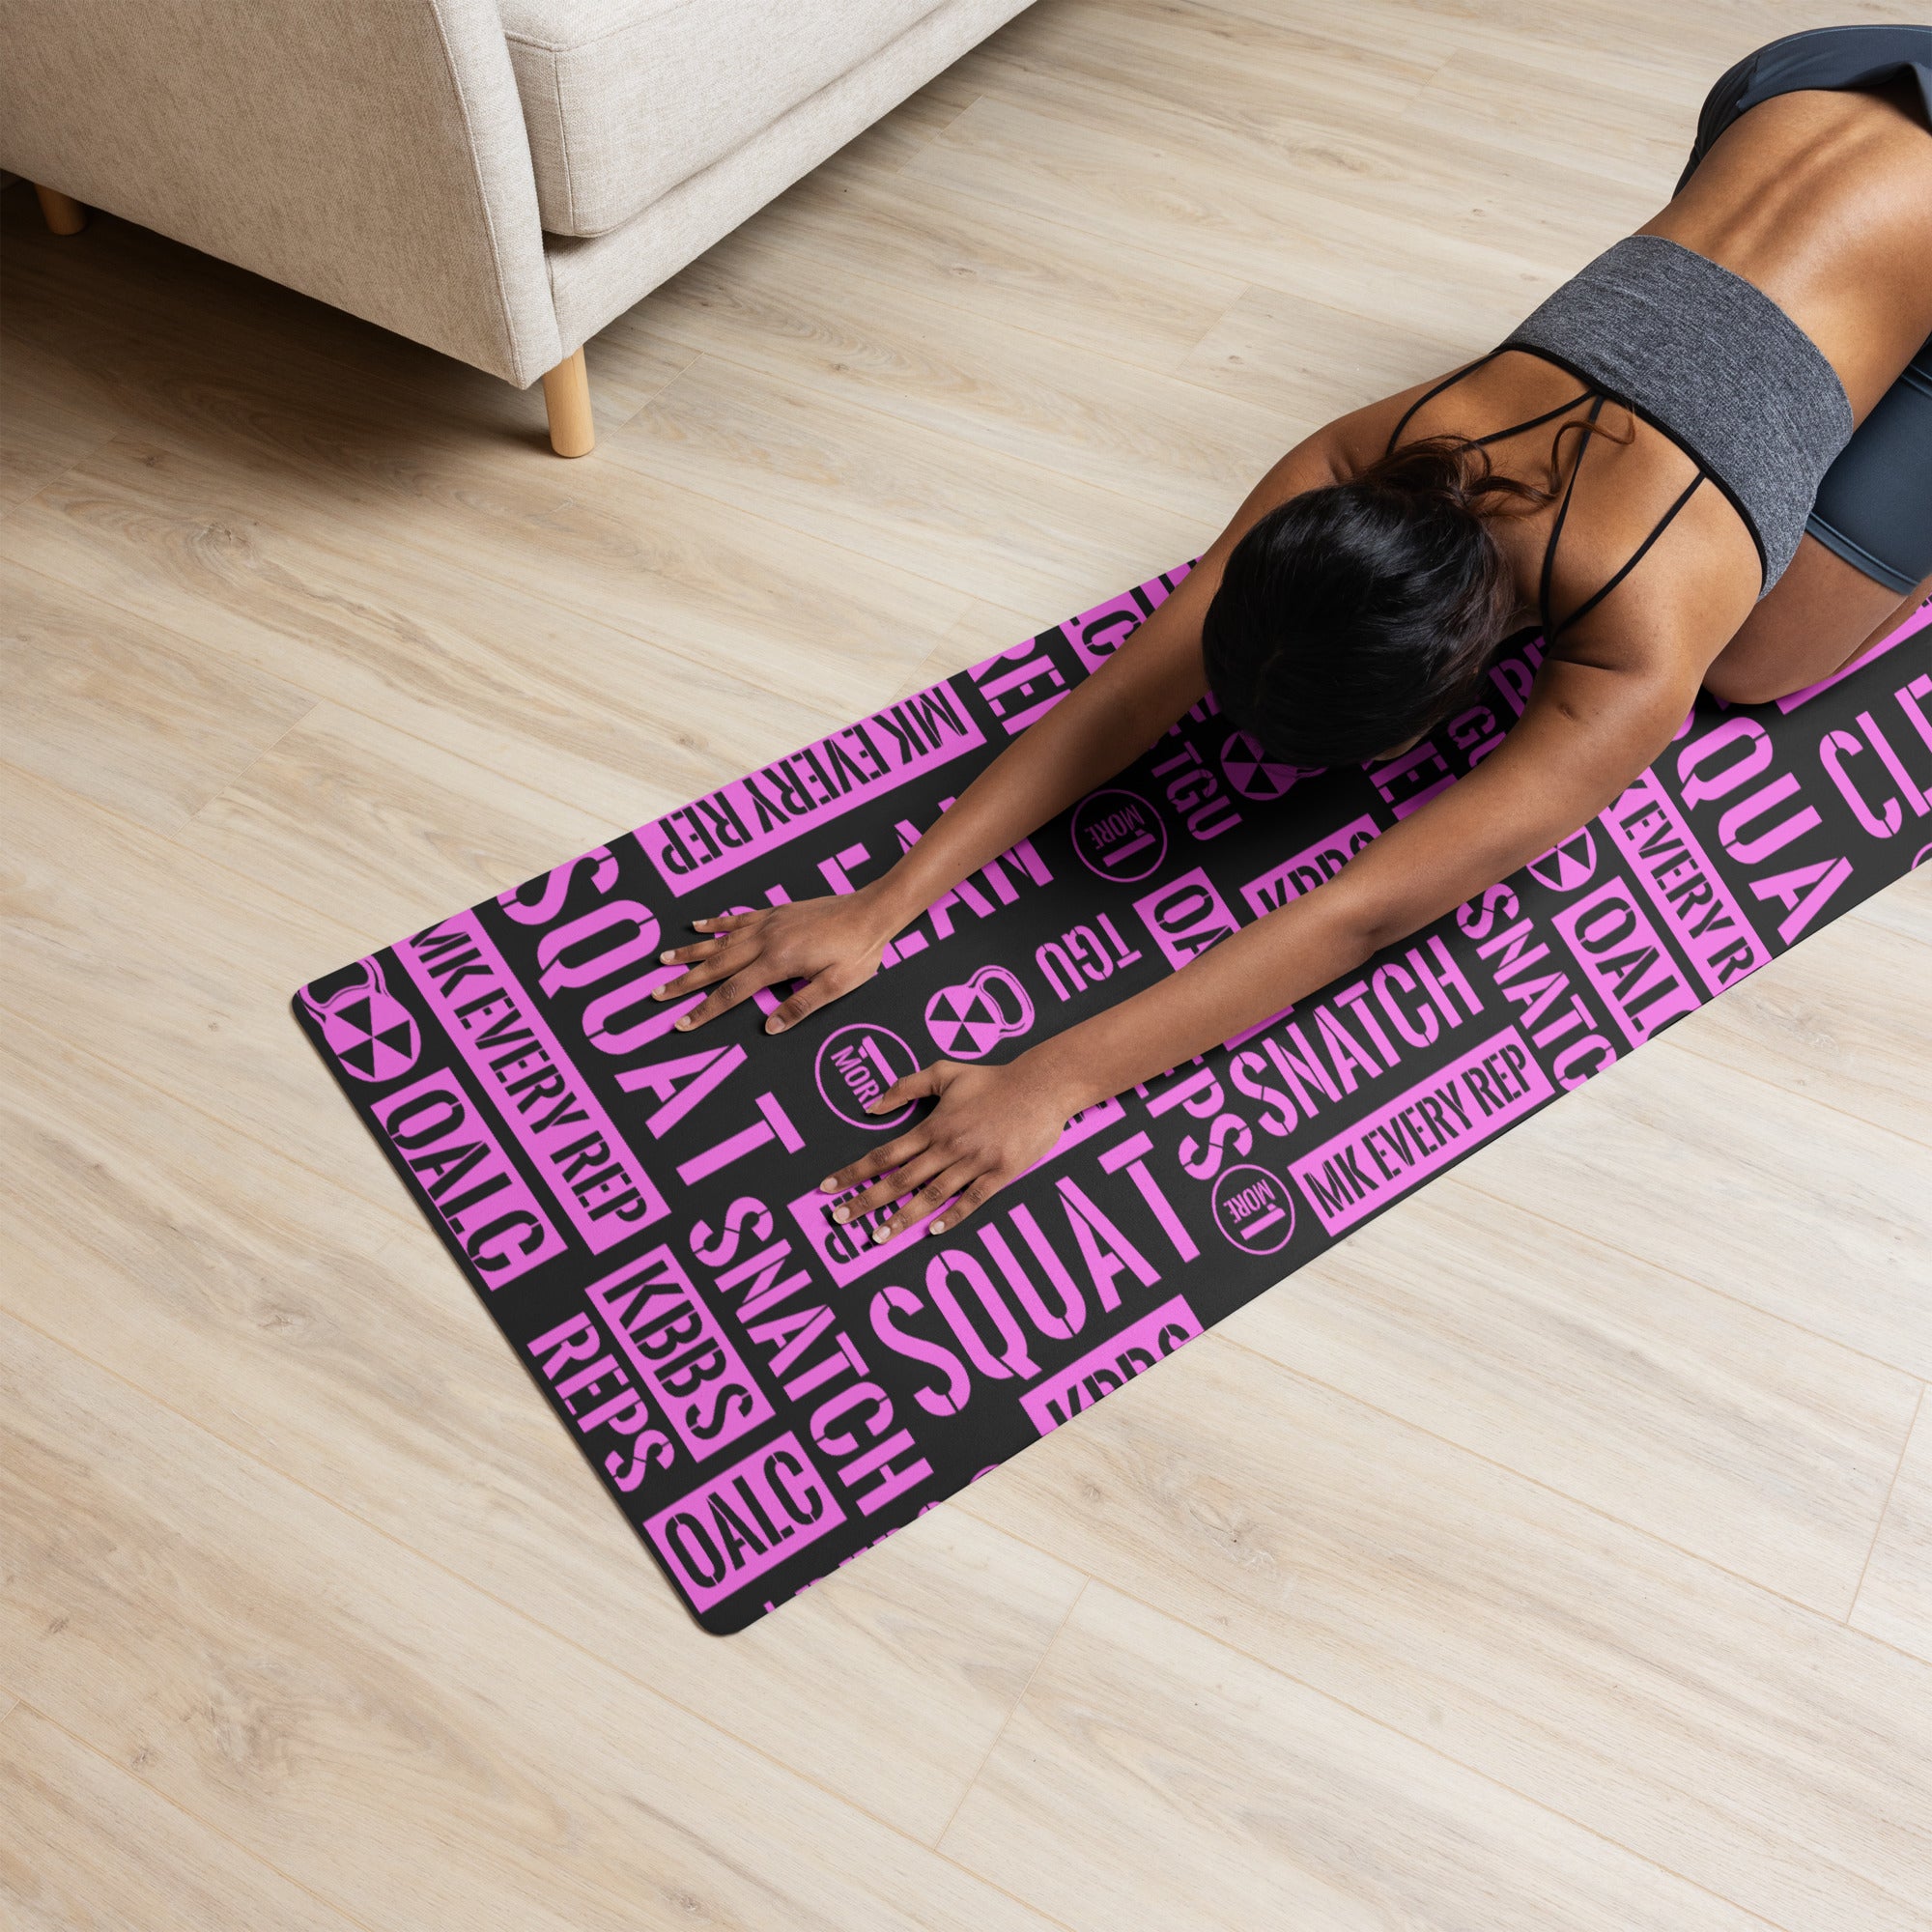 Black/Pink Acronyms Yoga mat